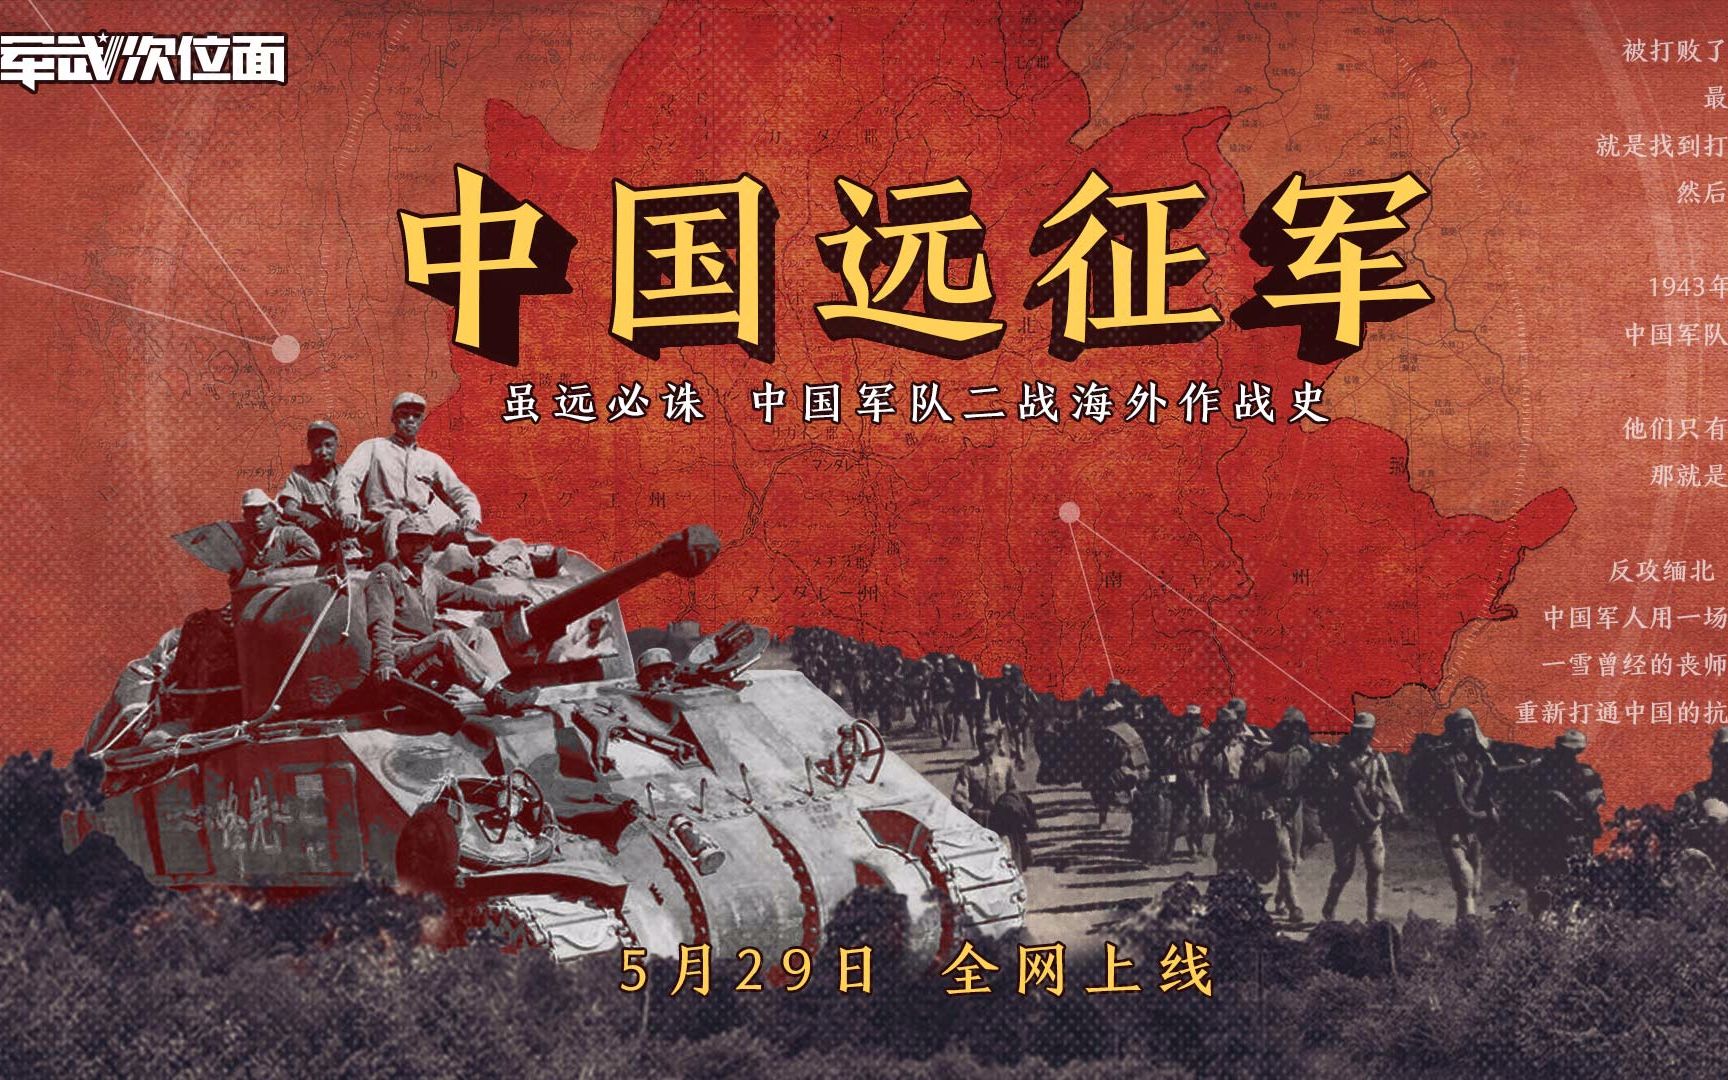 明日全网上线！！【军武次位面】新系列《中国远征军》即将播出！